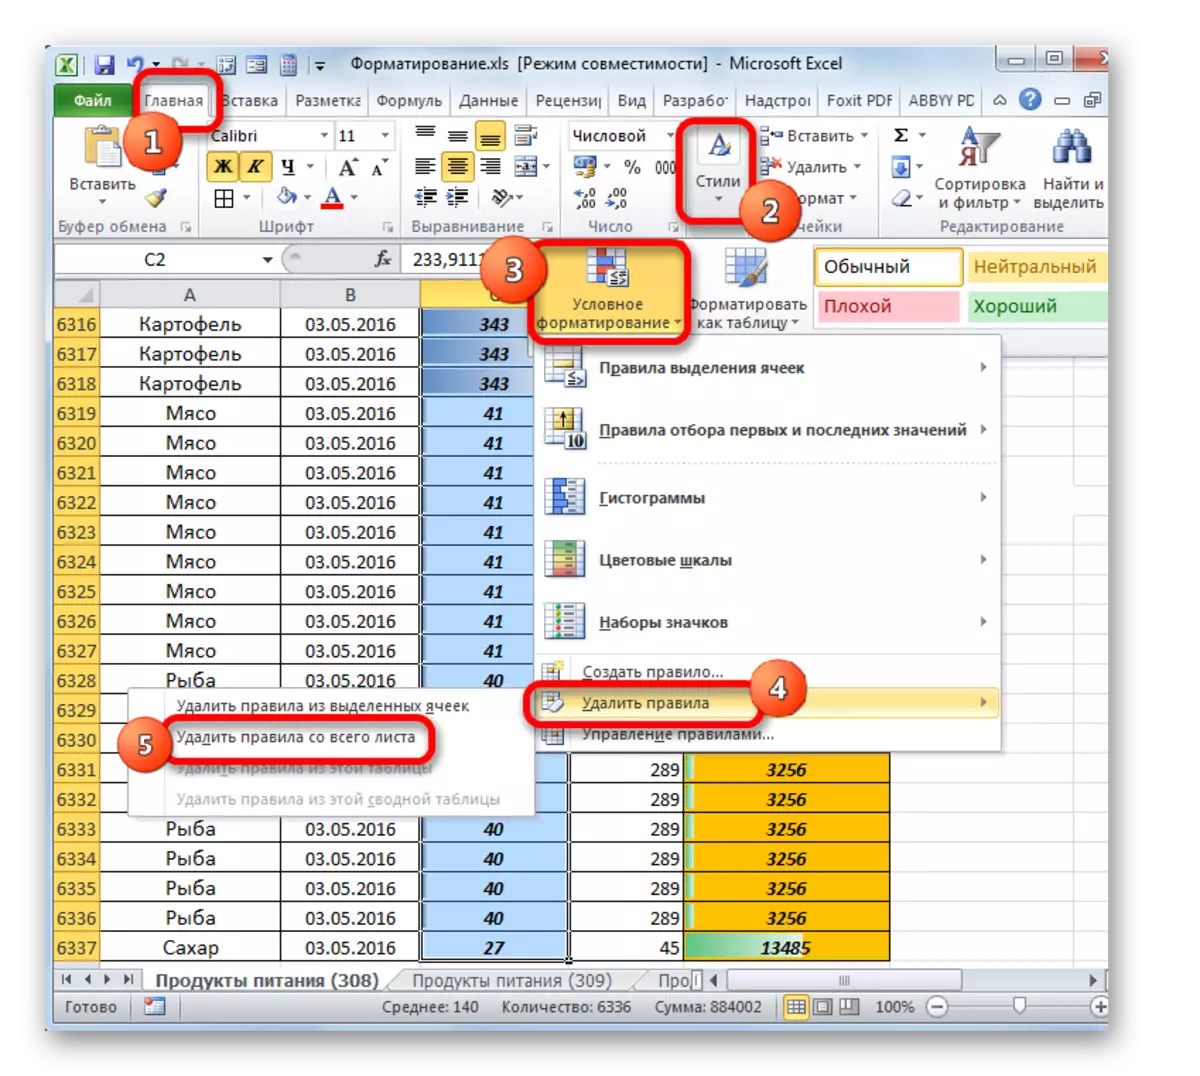 Voorwaardelijke opmaakregels verwijderen van het hele blad in Microsoft Excel